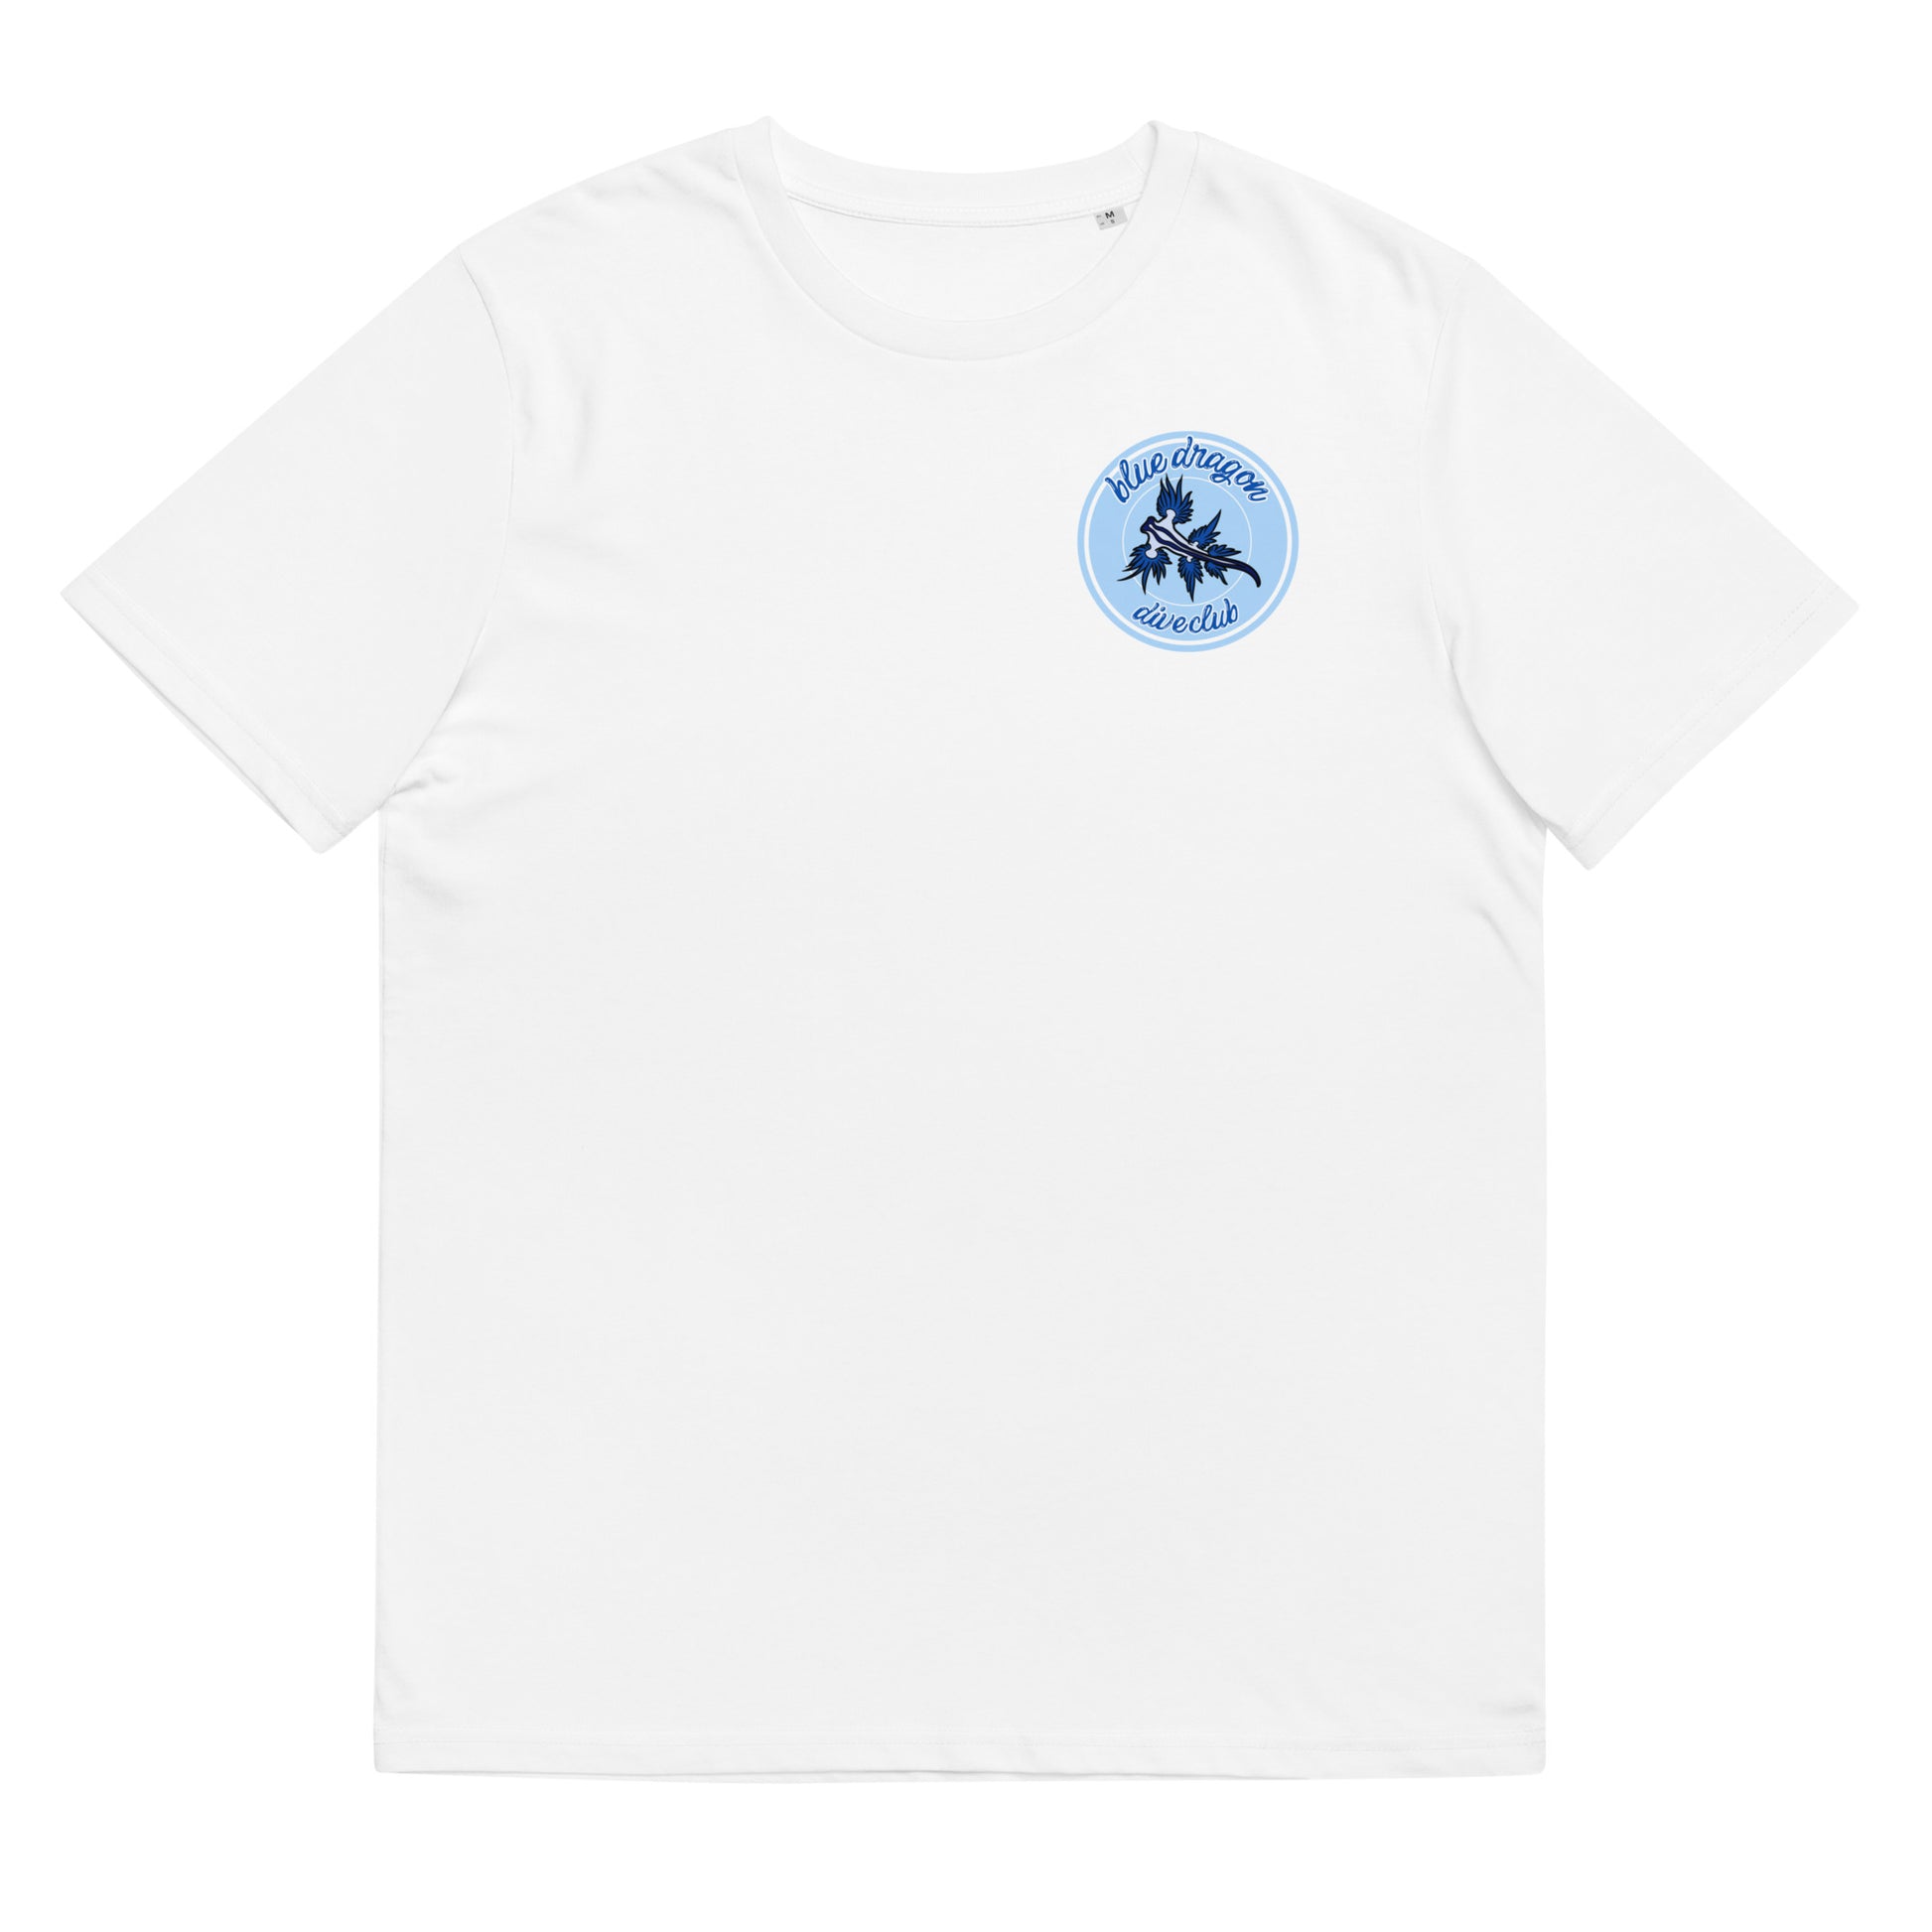 camiseta nudibranquio glaucus atlanticus